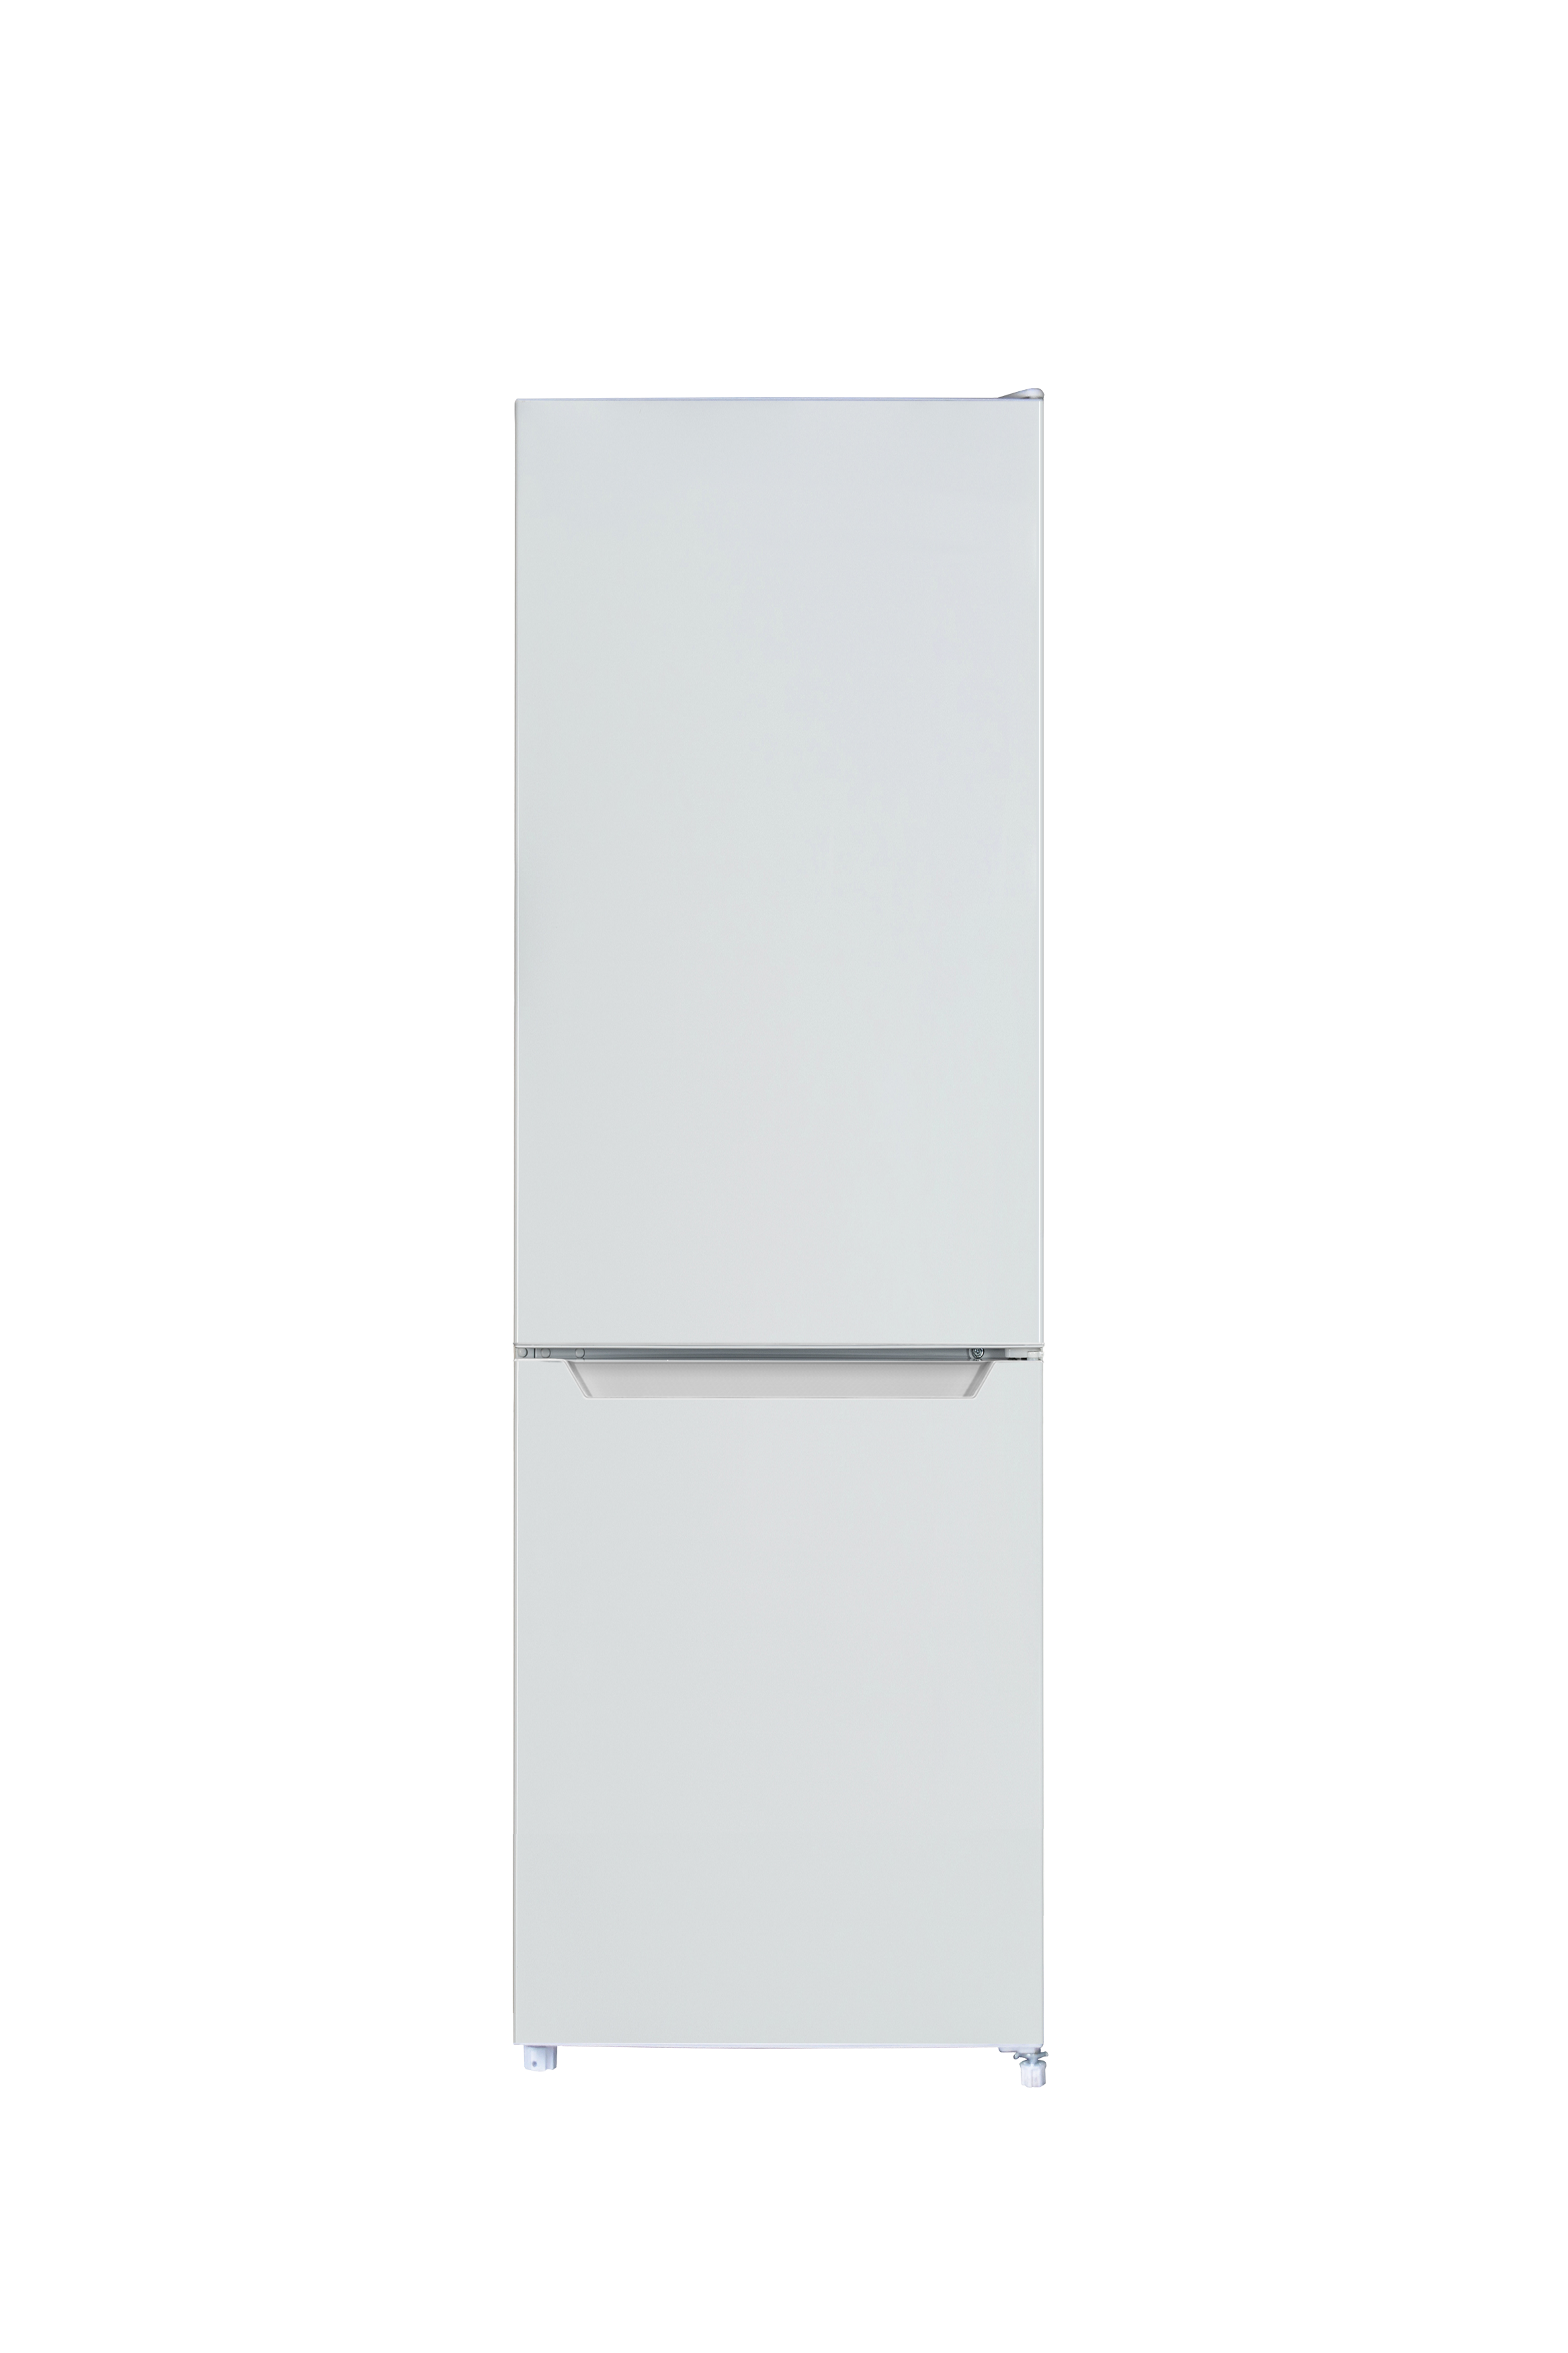 Kühlschrank Kühl Gefrierkombination Standgerät freistehend 144 cm weiß Respekta